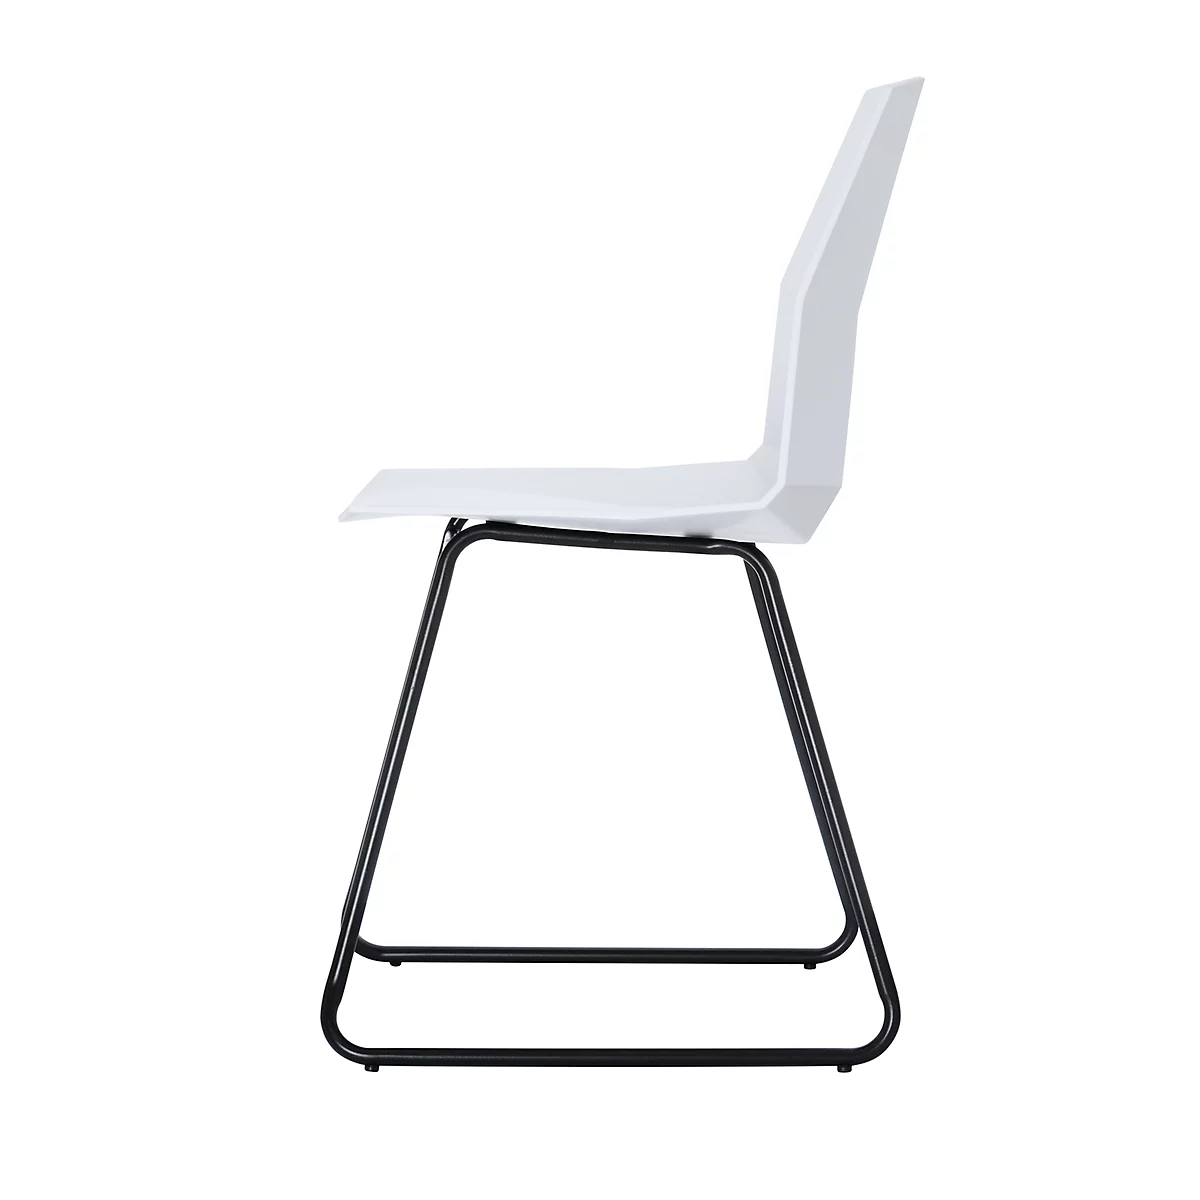 Paperflow CUBE-schaalstoel, gelakt staal, kunststof zitschaal, zithoogte 460 mm, set van 2, wit